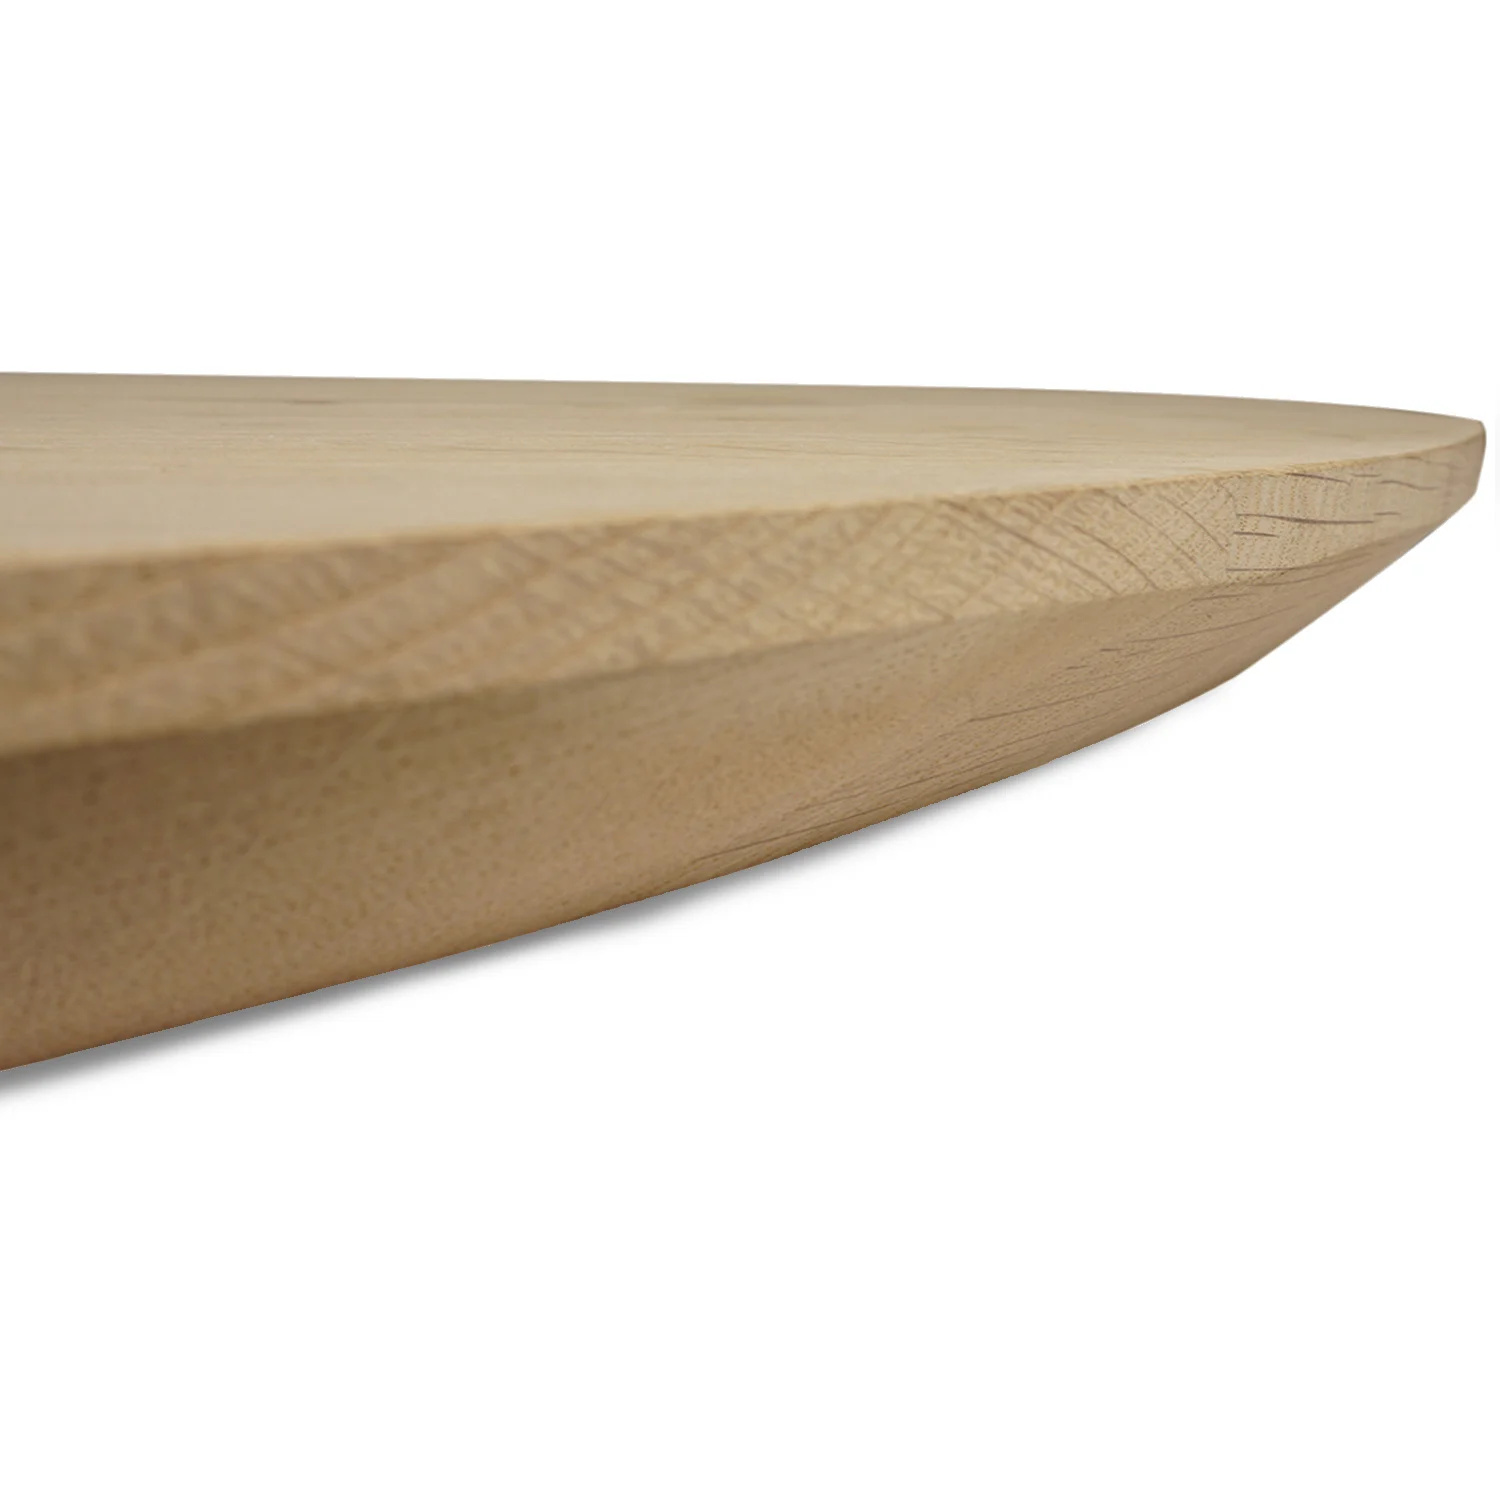  Tischplatte Eiche rund nach Maß - 4 cm dick - Eichenholz A-Qualität - Durchmesser: 30 - 180 cm - Eiche Tischplatte rund massiv - verleimt & künstlich getrocknet (HF 8-12%)